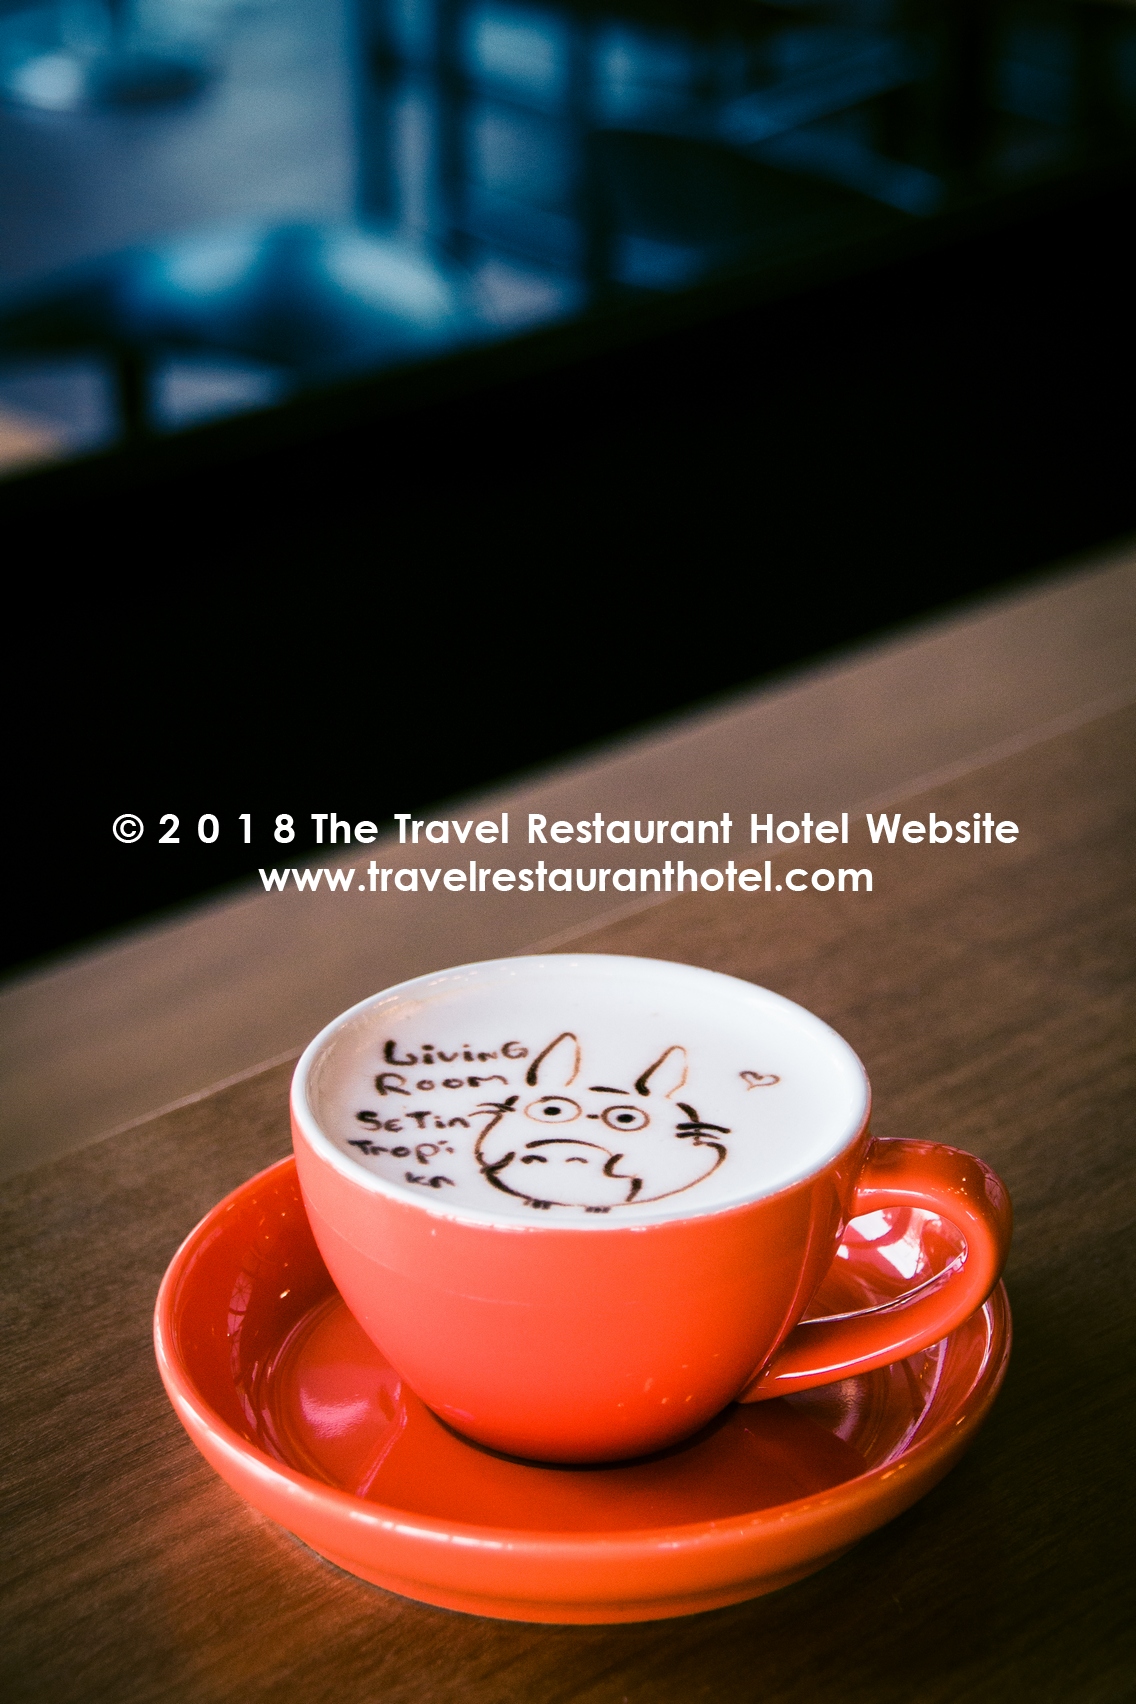 Living Room Cafe Setia Tropika Johor Bahru The Travel Restaurant Hotel Website